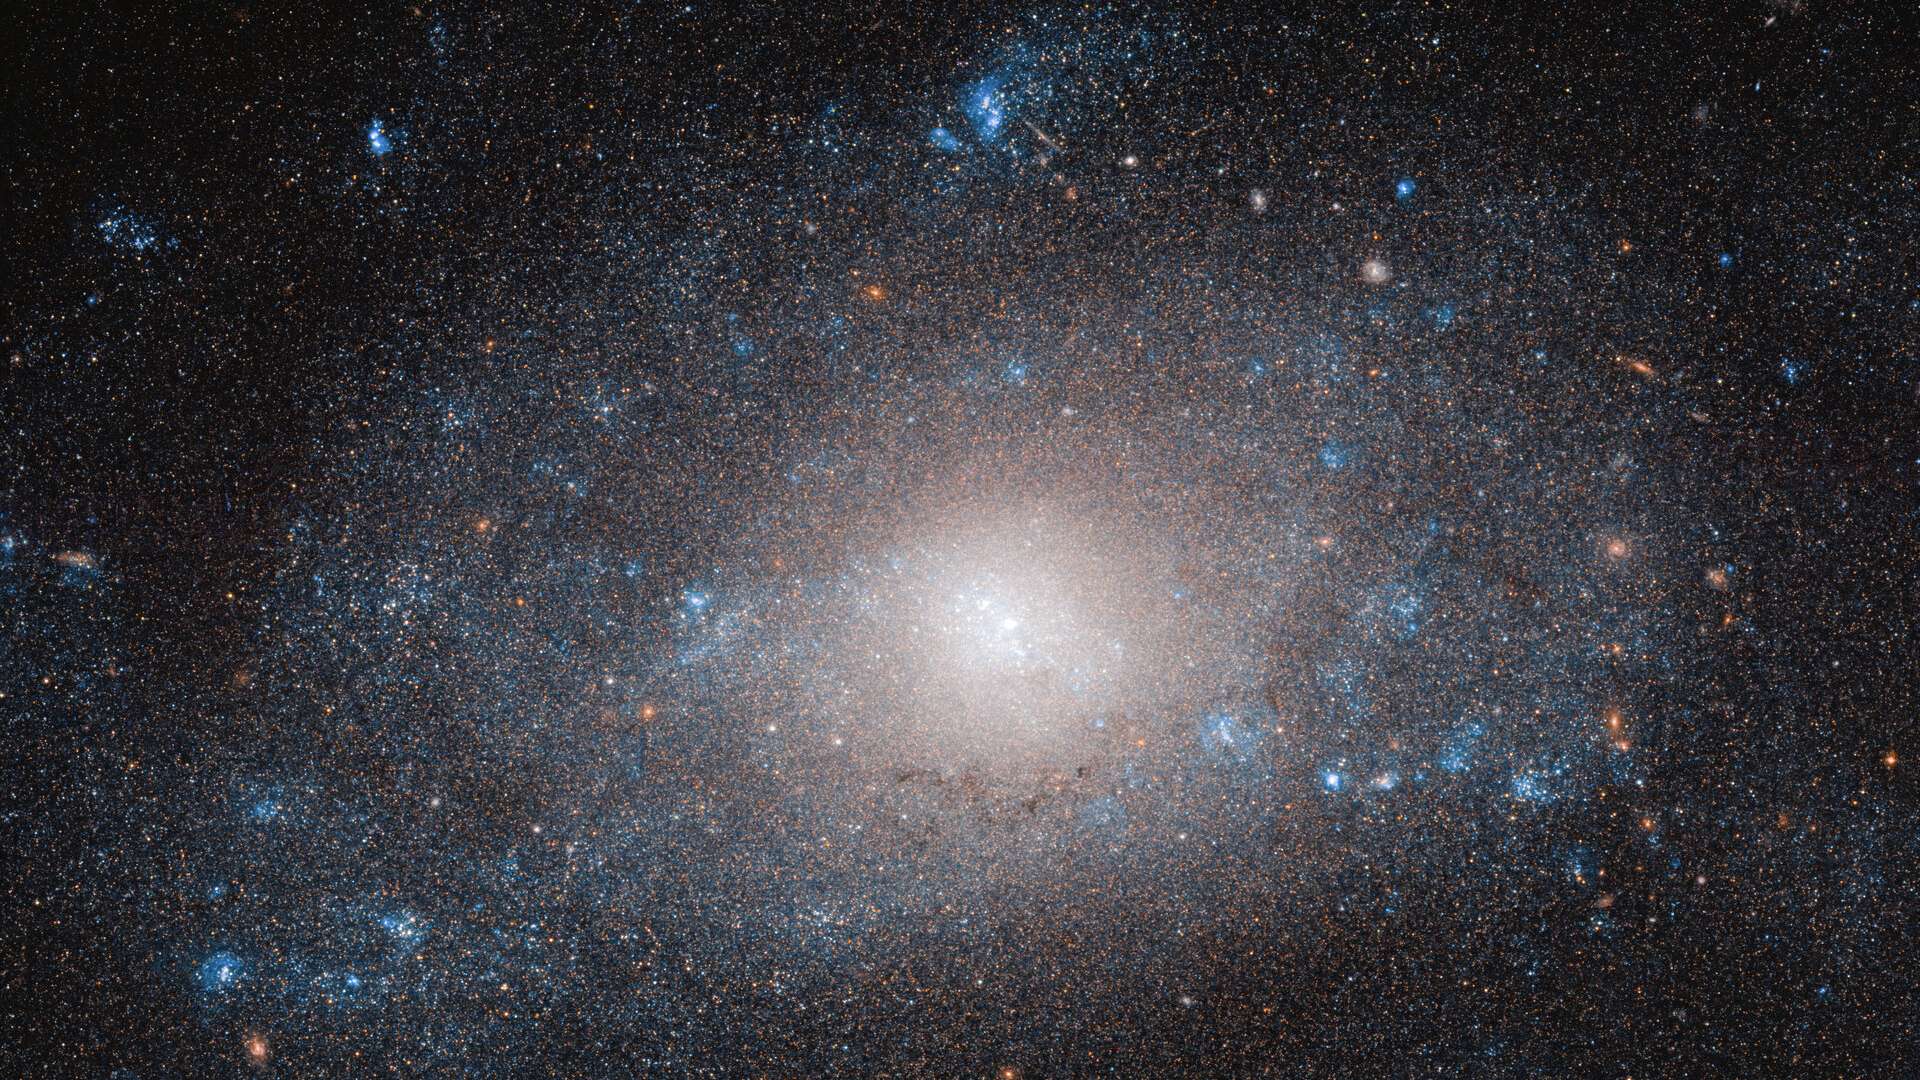 Na cauda do mítico animal representado na Constelação da Ursa Maior, está NGC 5585, uma galáxia espiral que é mais do que parece. As muitas estrelas e nuvens de poeira e gás que constituem NGC 5585 contribuem apenas com uma pequena fração da massa total da galáxia. Tal como acontece em muitas galáxias, esta discrepância pode ser explicada pela presença abundante, mas aparentemente invisível, de matéria escura. O disco da galáxia estende-se por mais de 35 mil anos-luz de diâmetro e está localizado a cerca de 28 milhões de anos-luz de distância da Terra